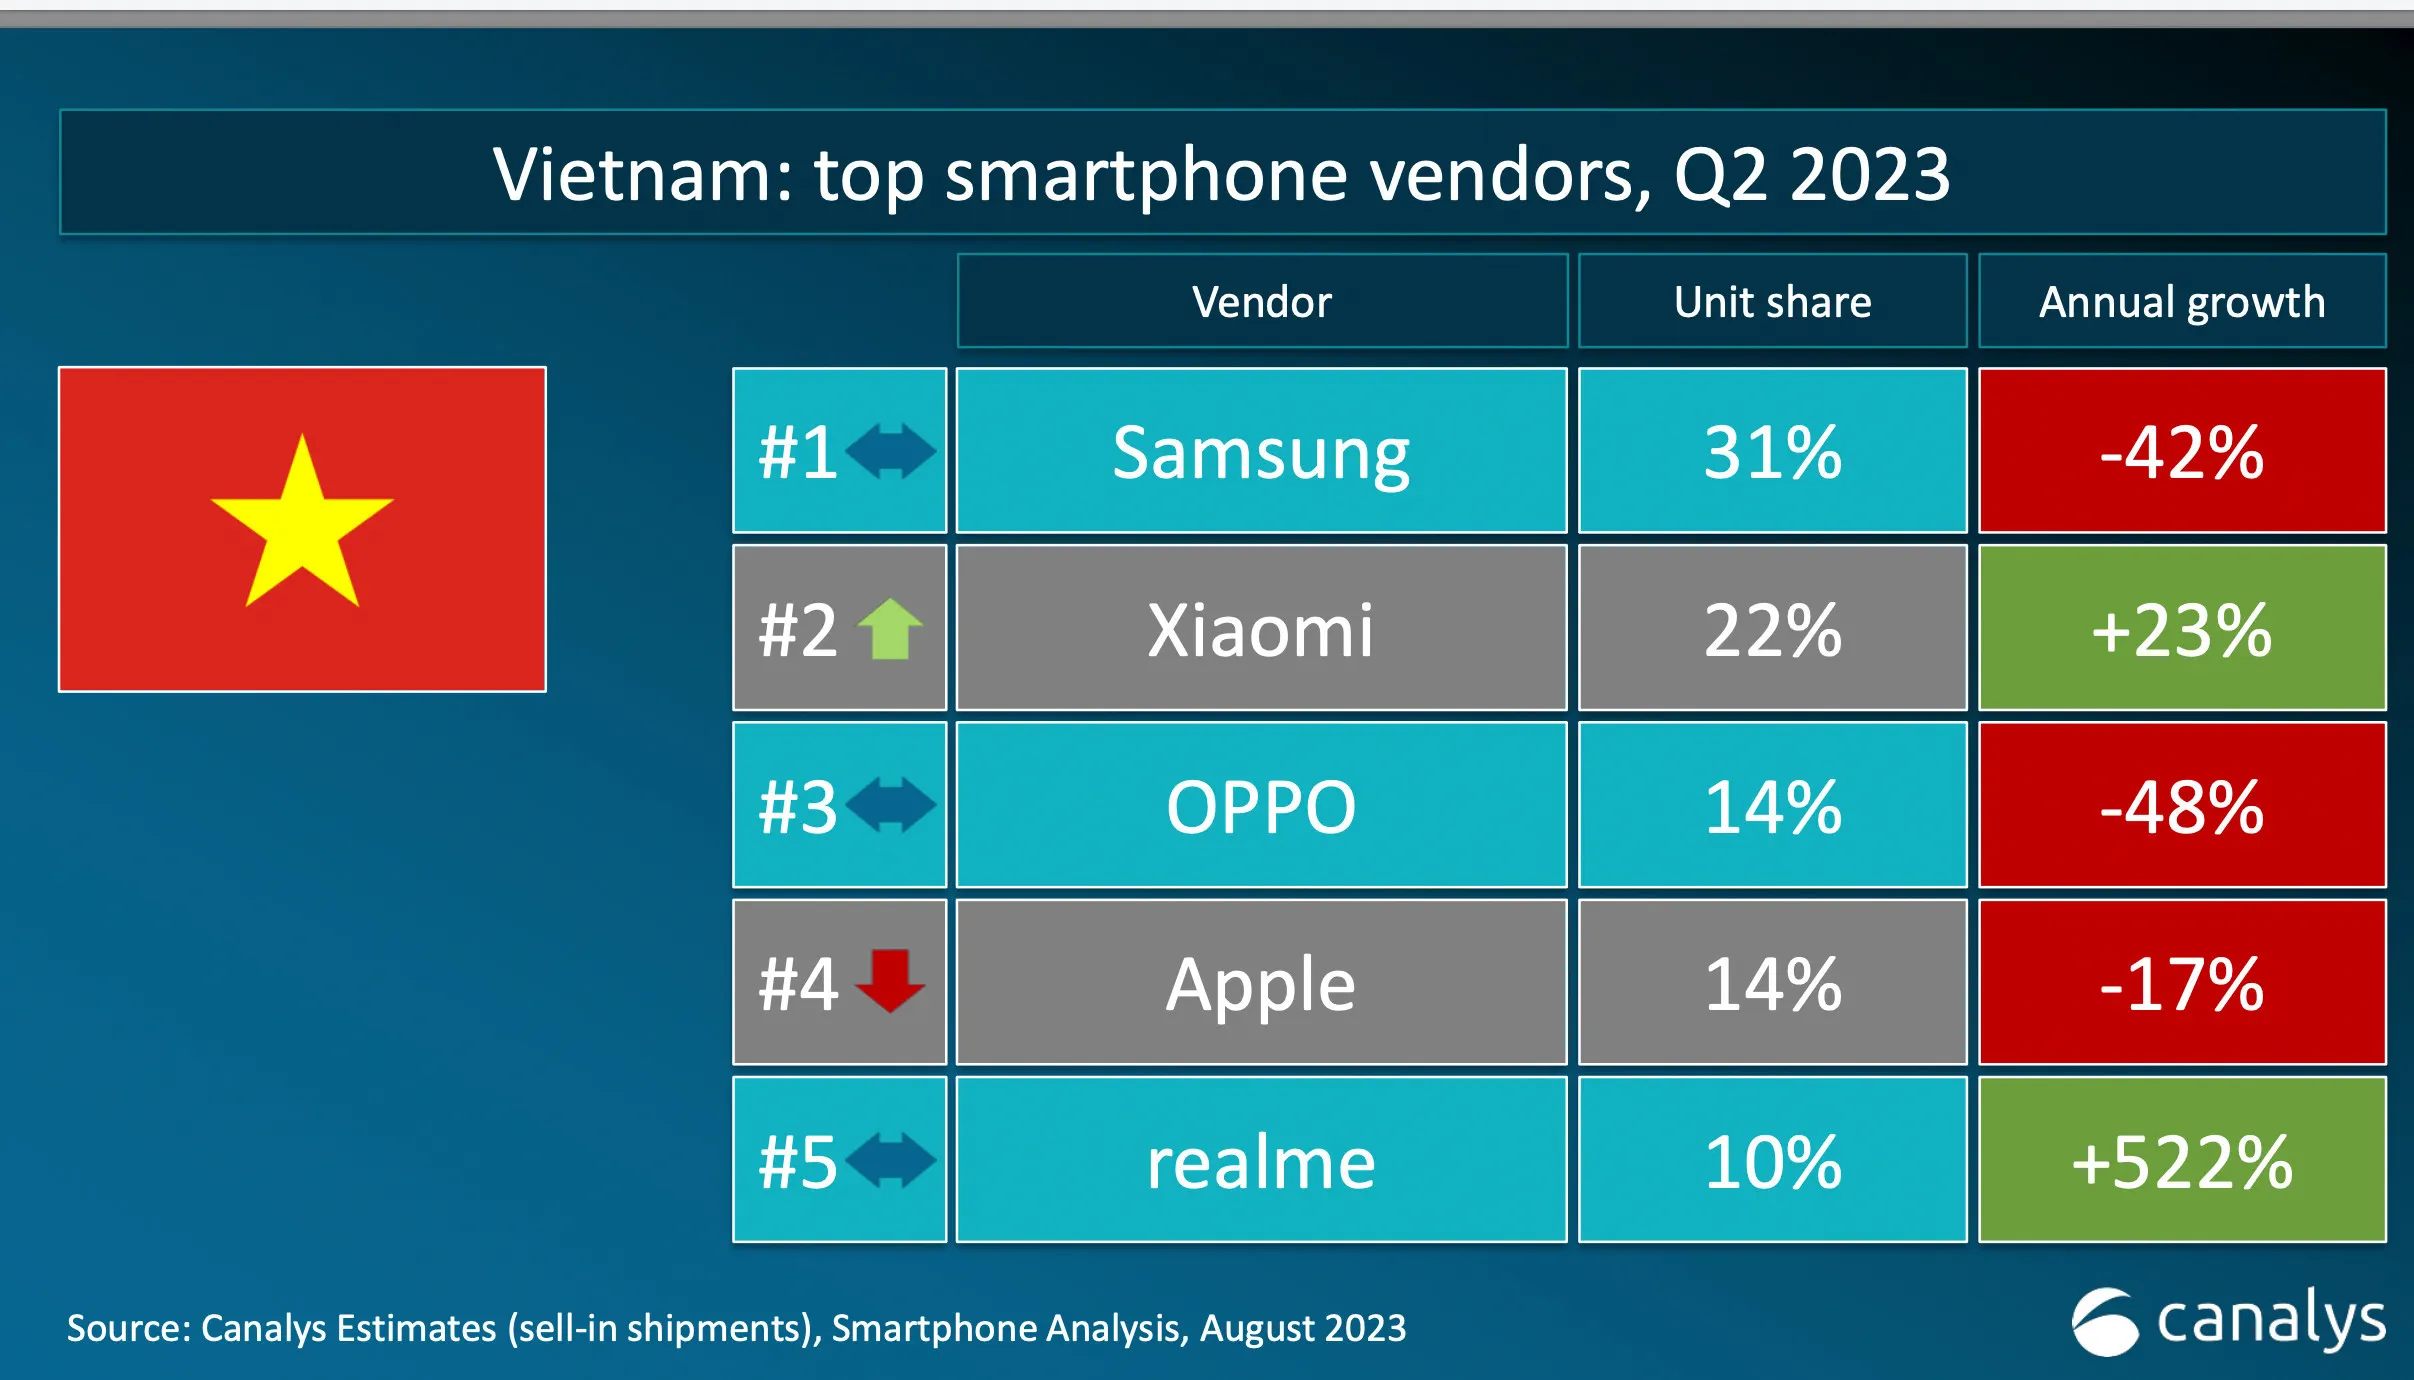 realme tròn 5 tuổi, lọt top 5 thương hiệu công nghệ tại Việt Nam có mức tăng trưởng cao nhất Quý II/2023